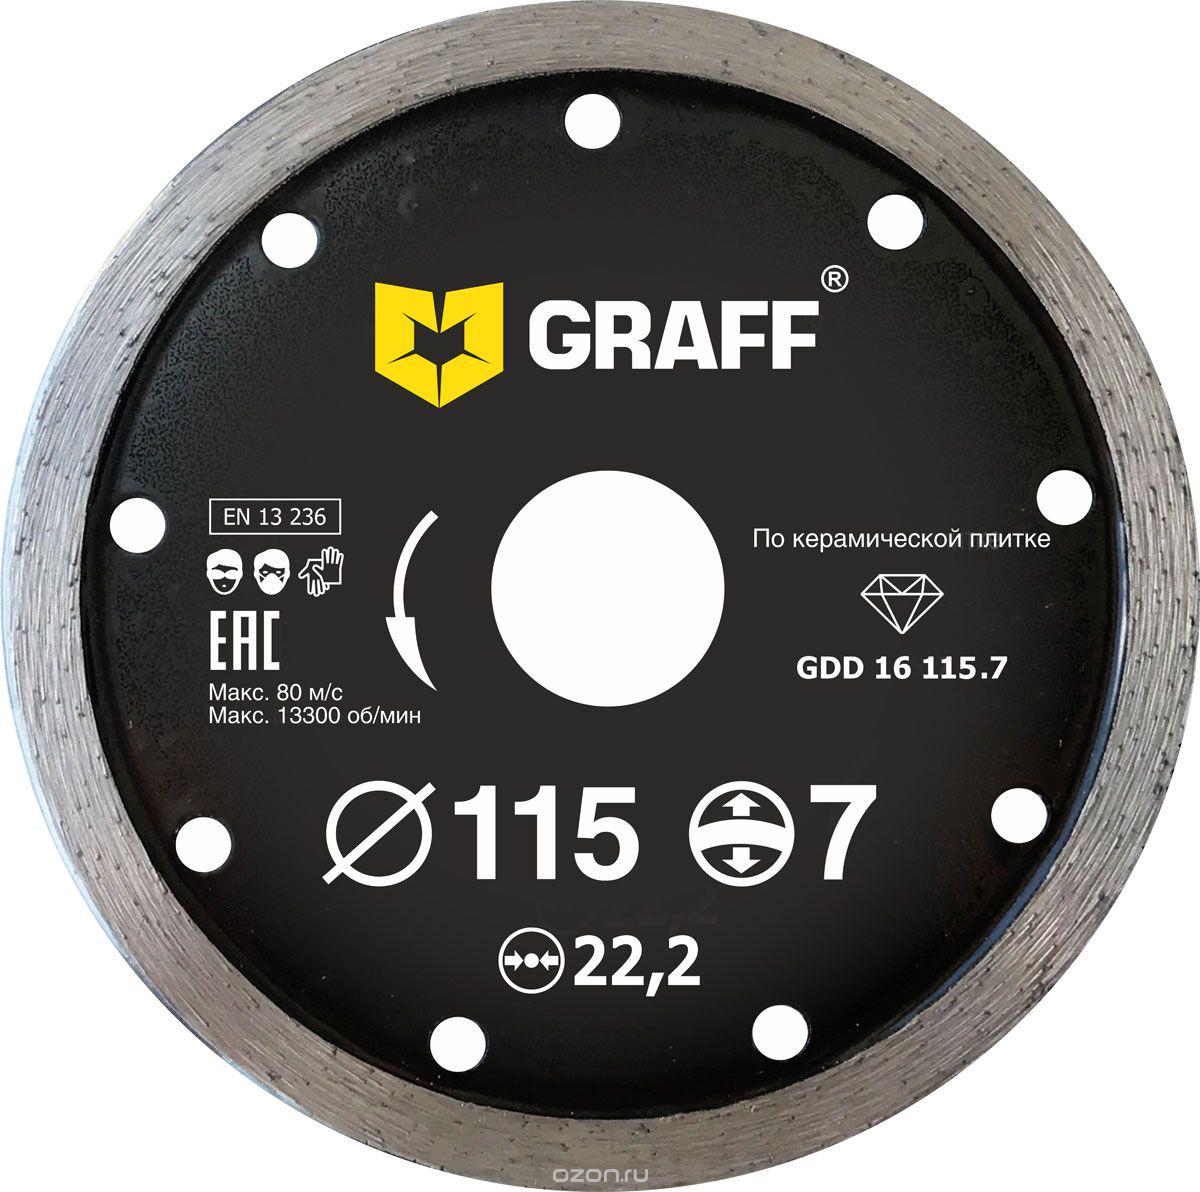 Диск отрезной алмазный GRAFF (GRAFF GDD 16 115.7) Ф115х22мм по керамике диск алмазный 4 13 мм для заточки концевых фрез sdc4 13lx13